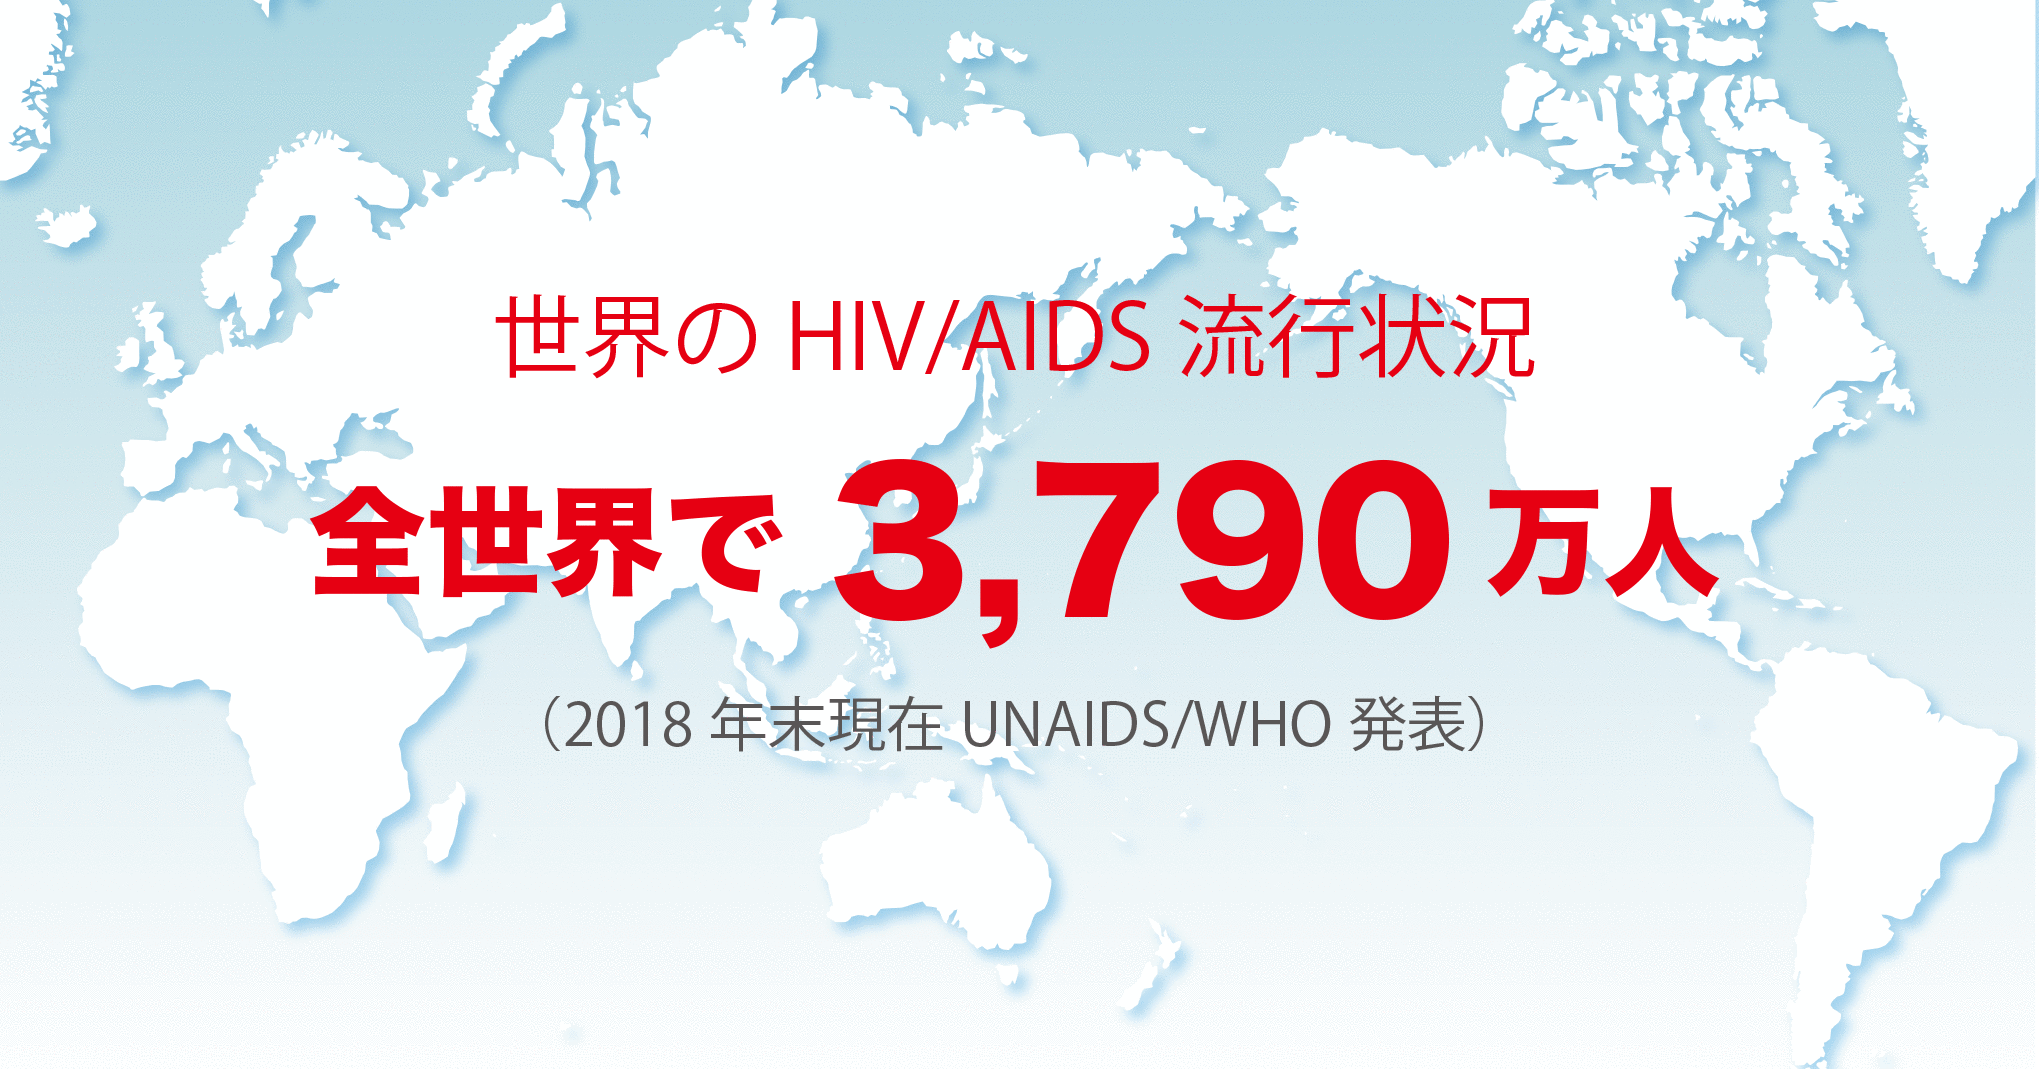 世界のHIV/AIDS流行状況